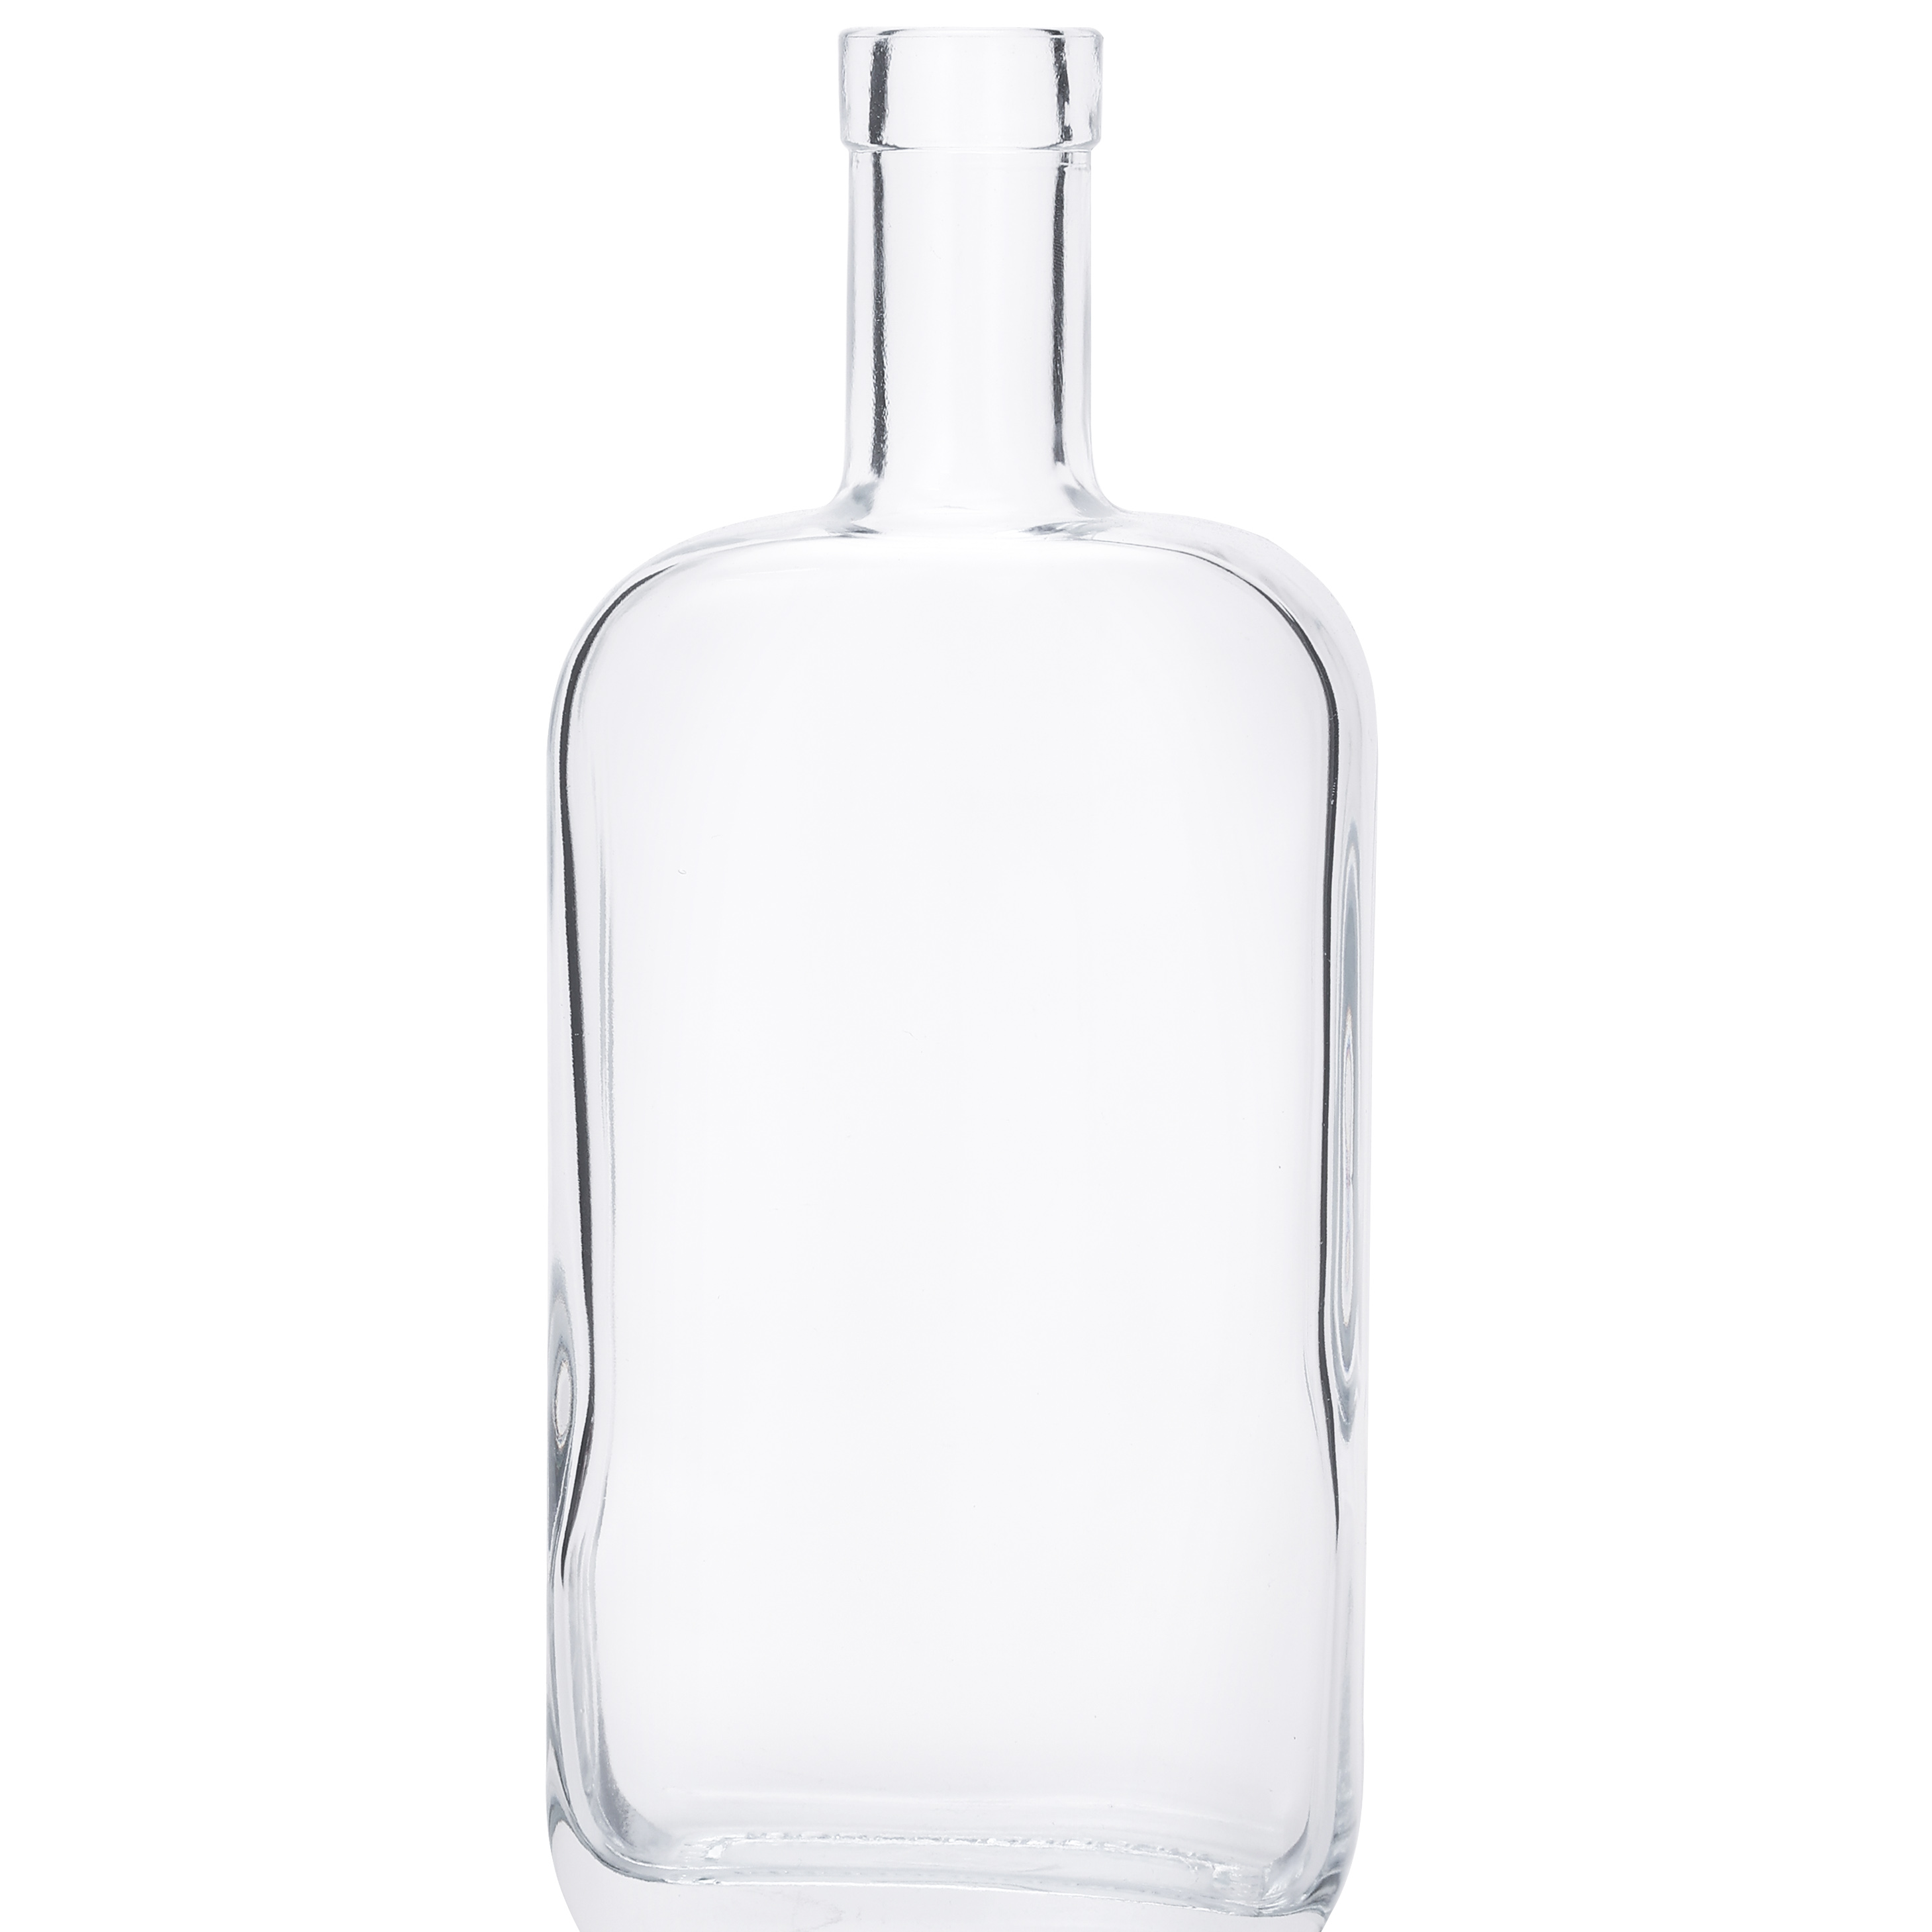 Liquor Flint Whiskey/vodka Glass Bottles For Sale Glass Whiskey Bottles With Lid Vodka Glass Bottles